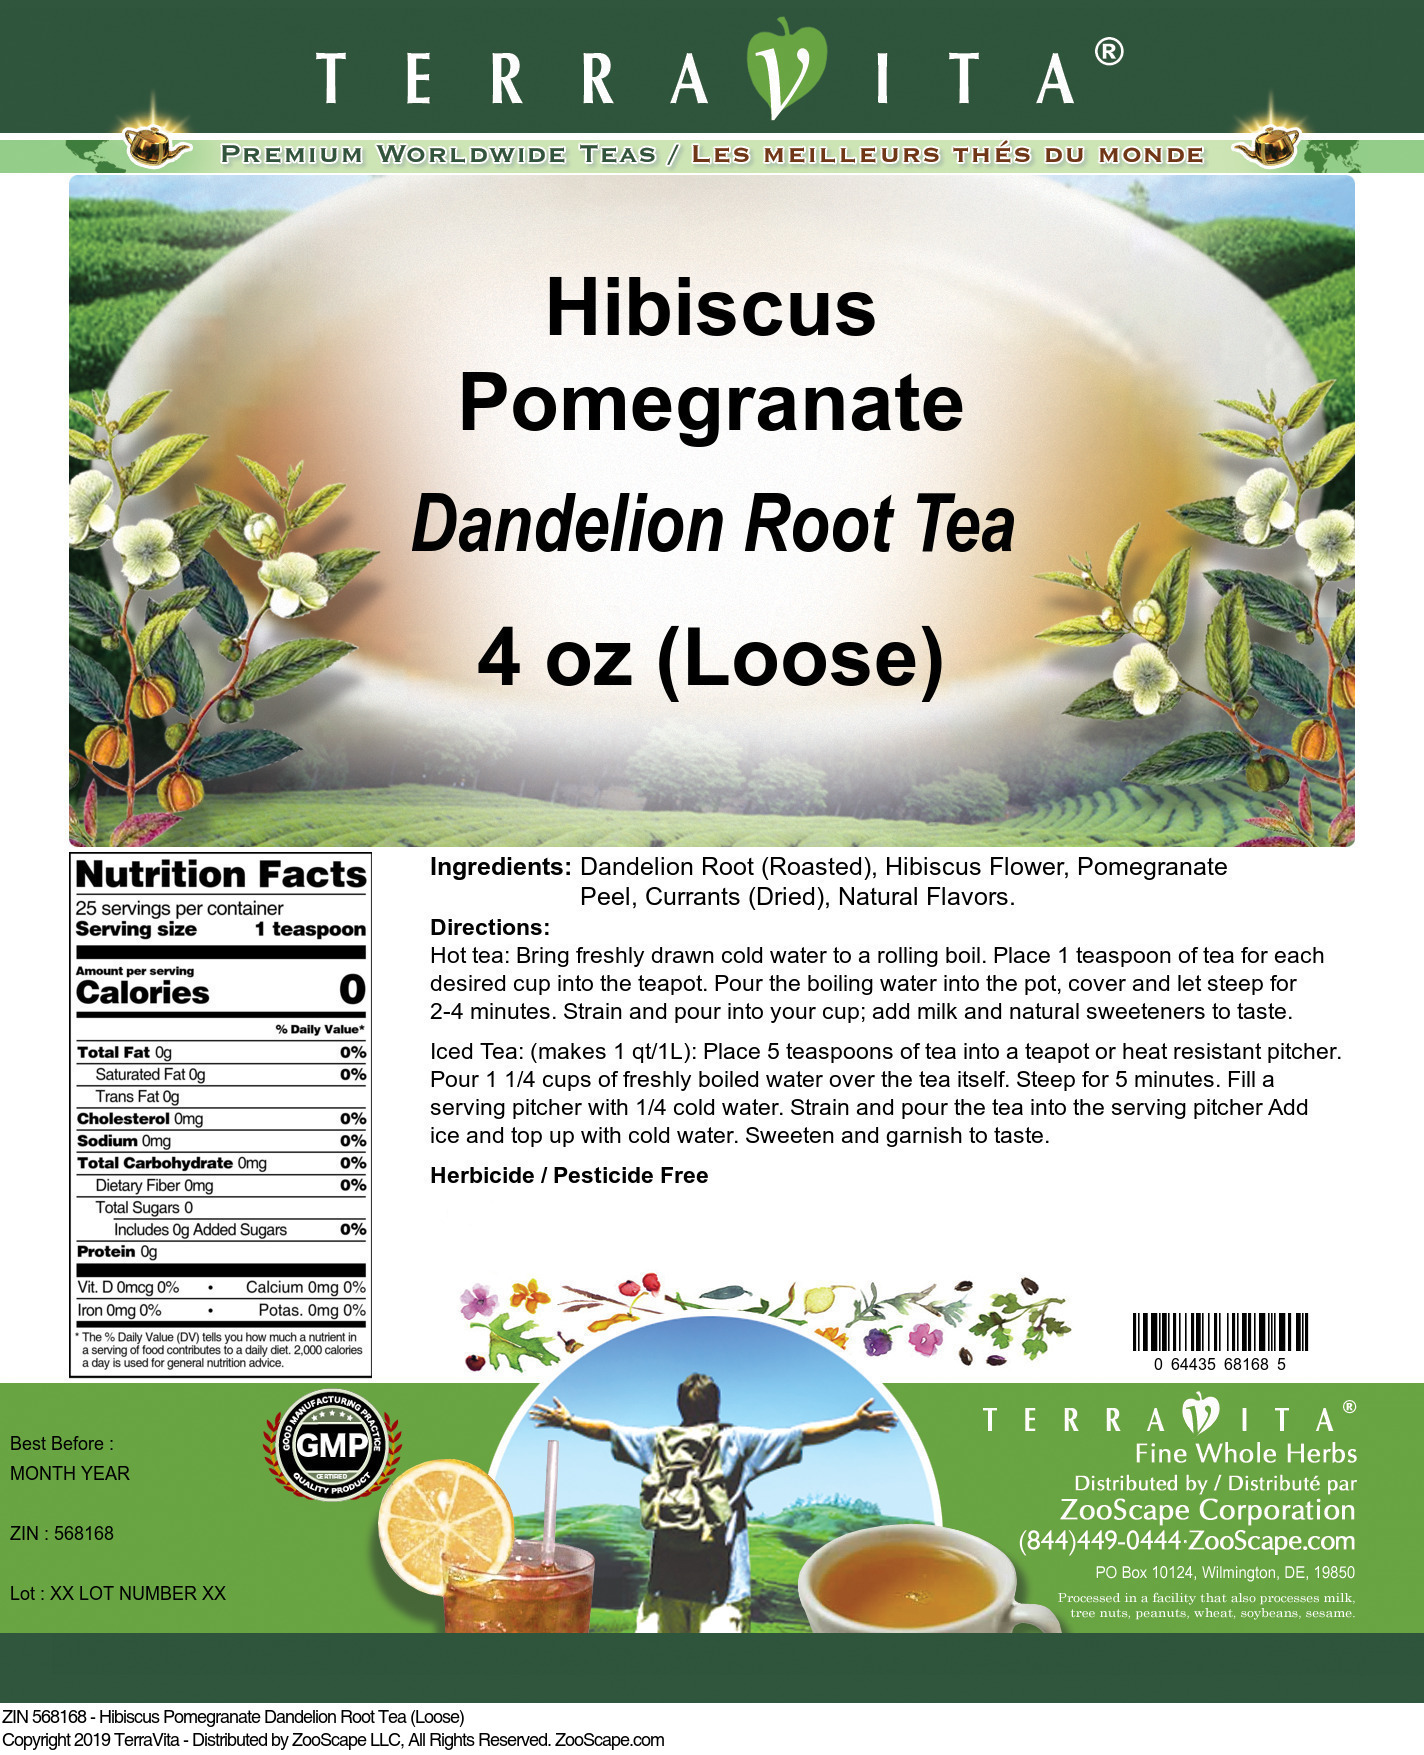 Hibiscus Pomegranate Dandelion Root Tea (Loose) - Label